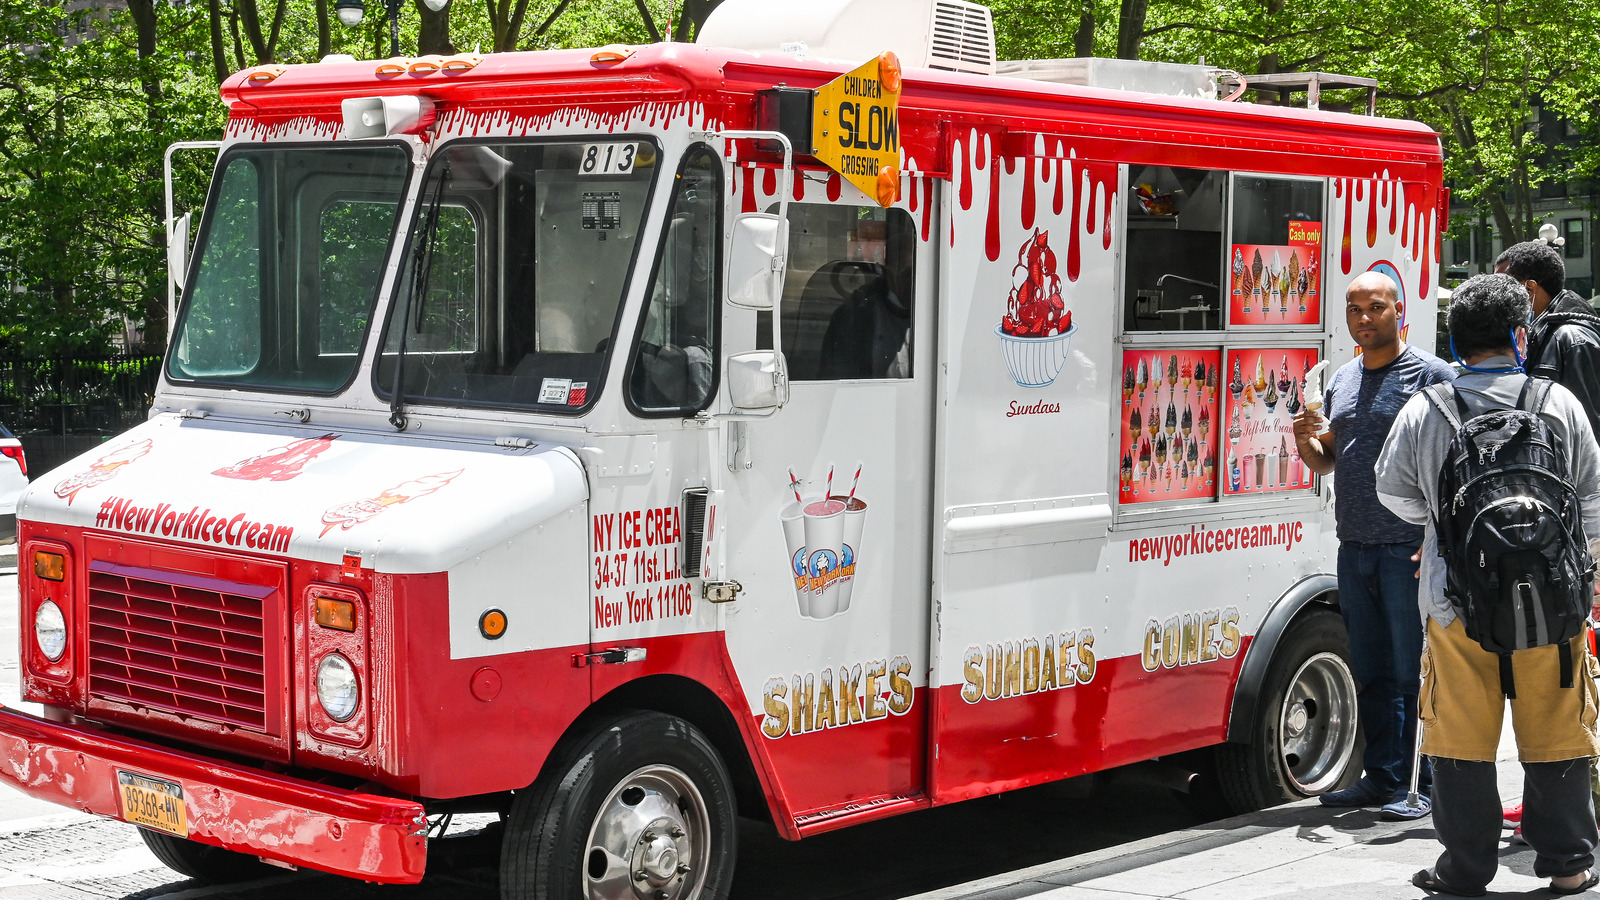 how much do ice cream trucks make